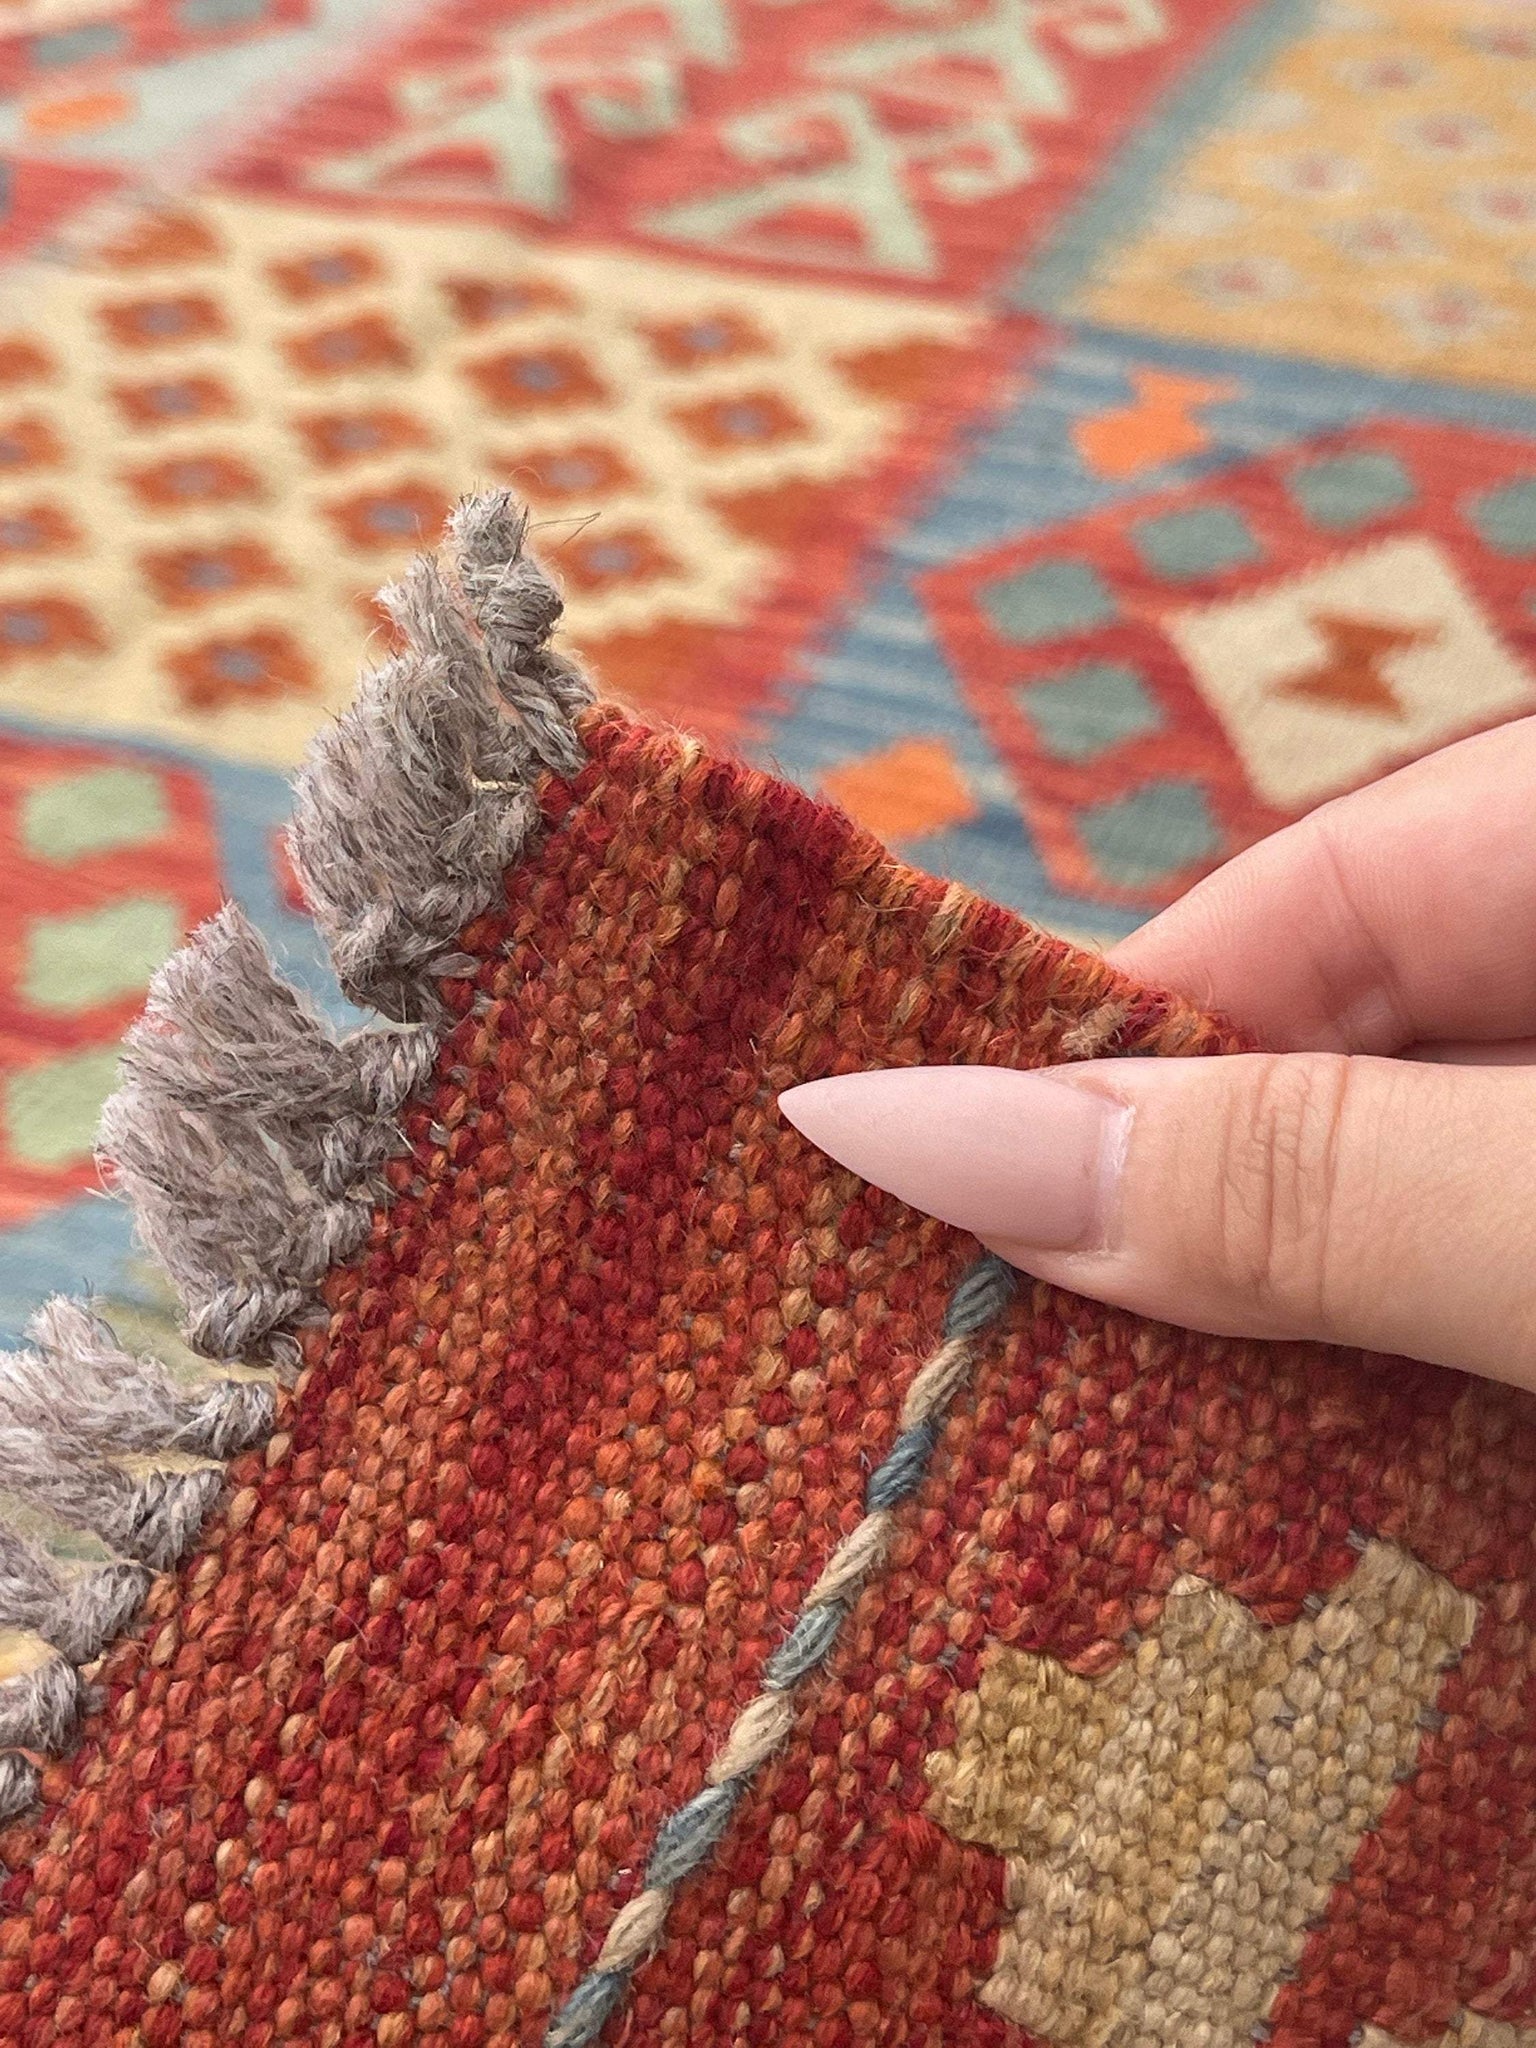 6x10 (180x305) Handmade Afghan Kilim Flatweave Rug